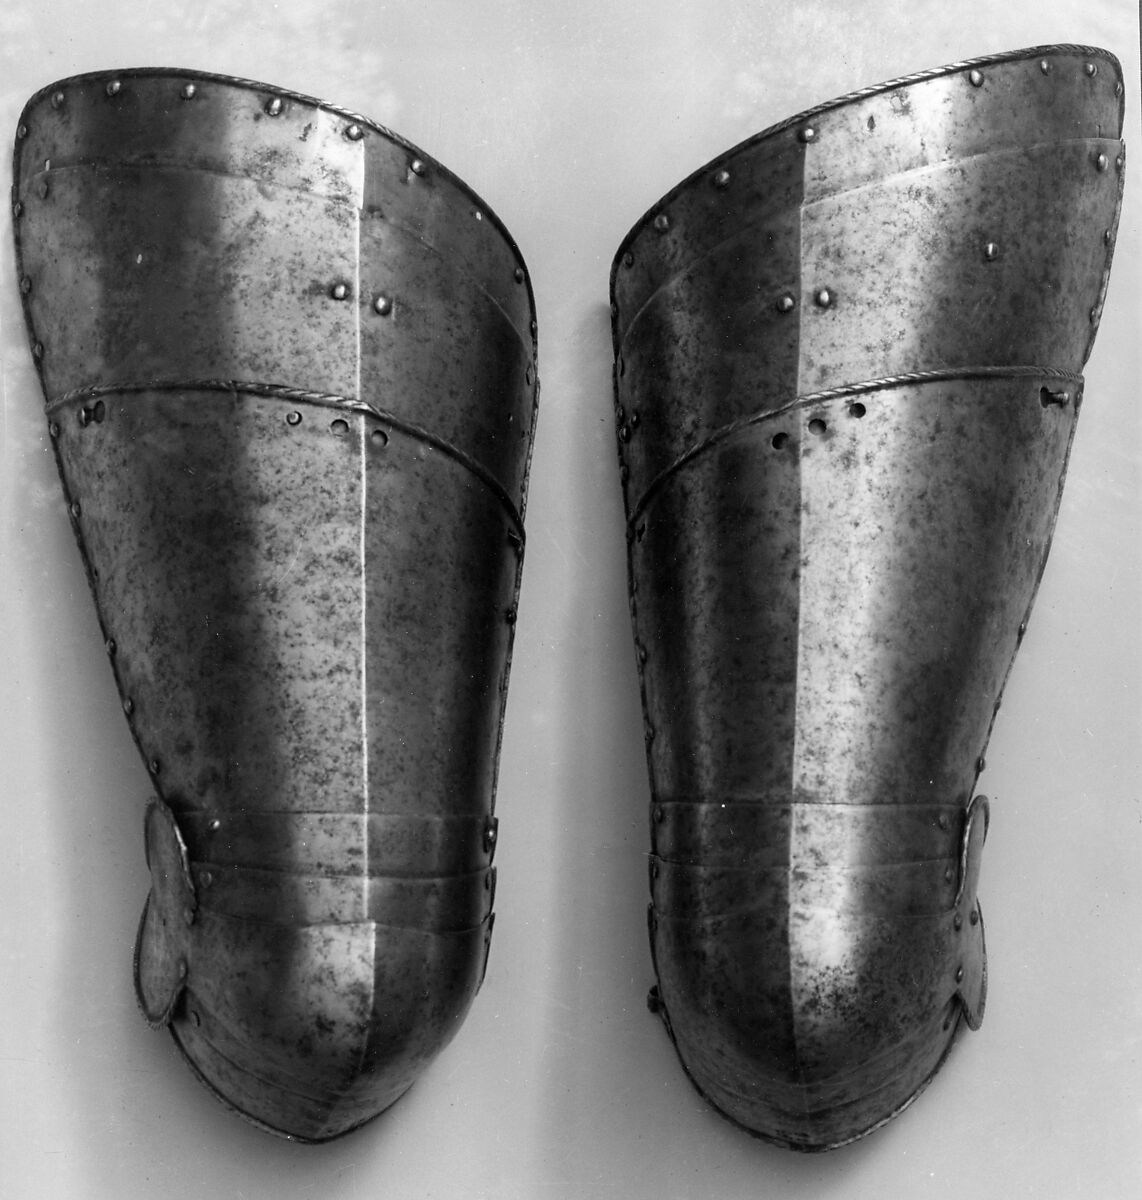 Pair of Thigh Defenses (Cuisses) with Knee Defeneses (Poleyn), Steel, German, Augsburg 